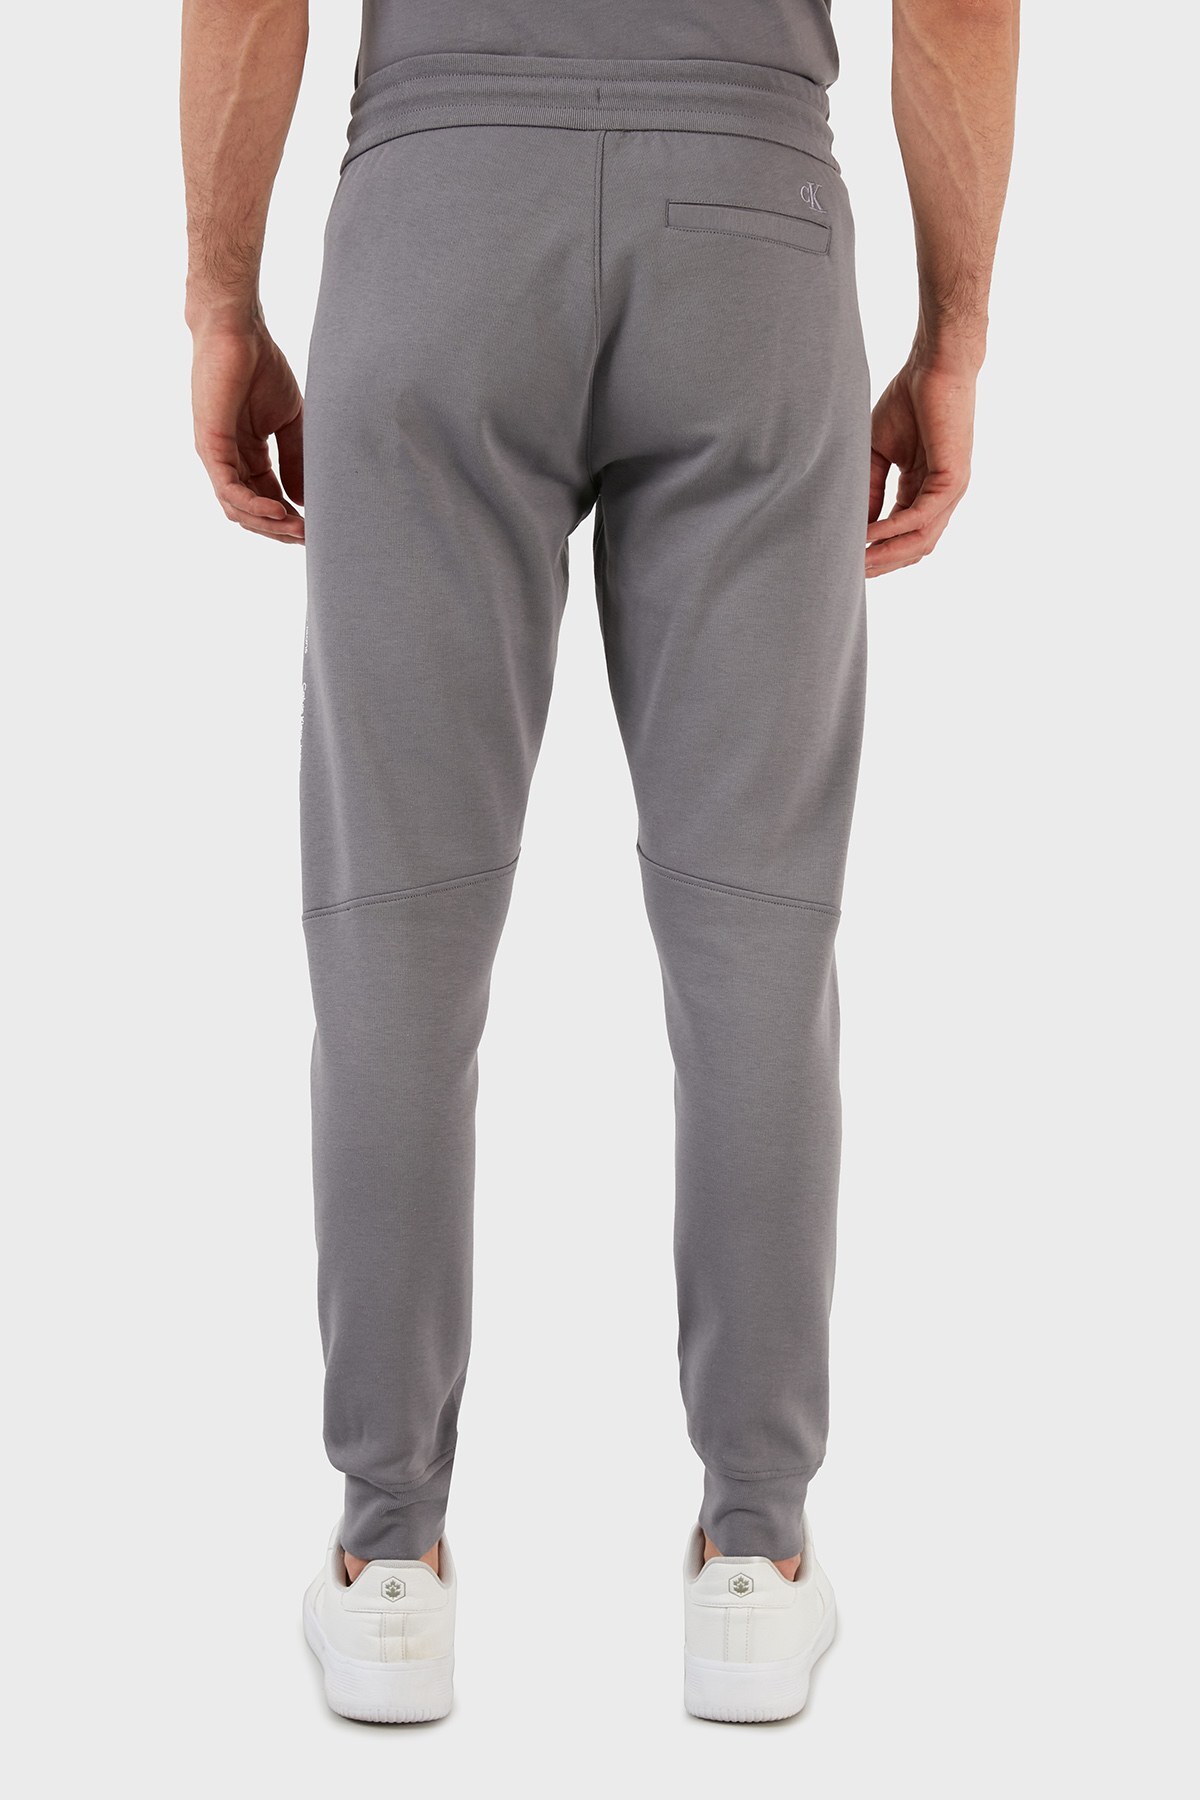 Calvin Klein Logolu Pamuklu Belden Bağlamalı Slim Fit Jogger Erkek Pantolon J30J319652 PTP GRİ